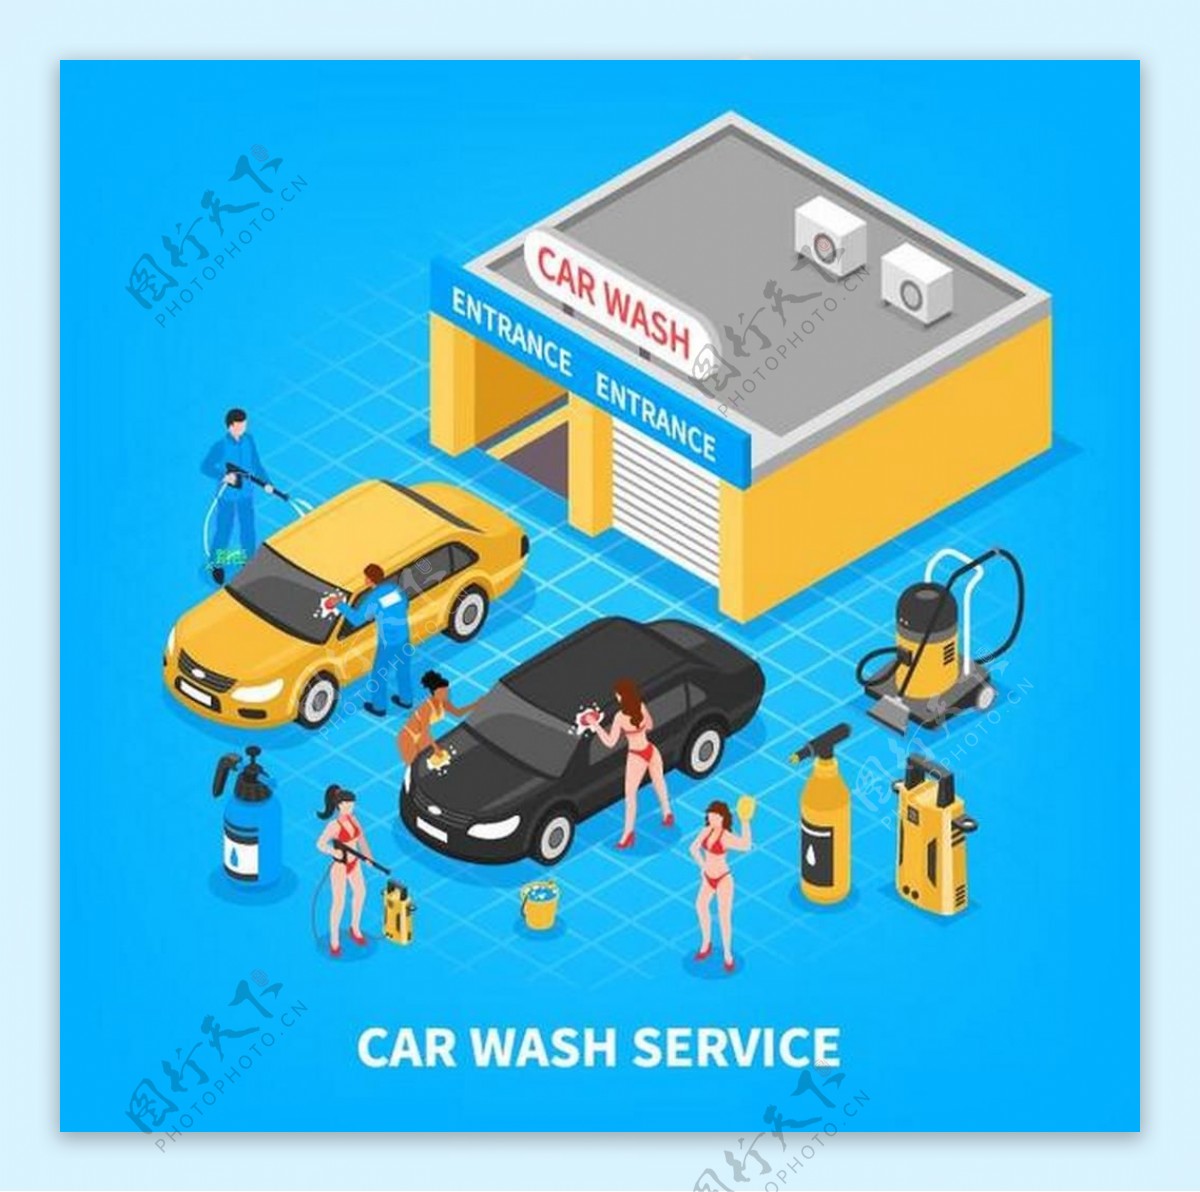 洗车服务业务矢量图